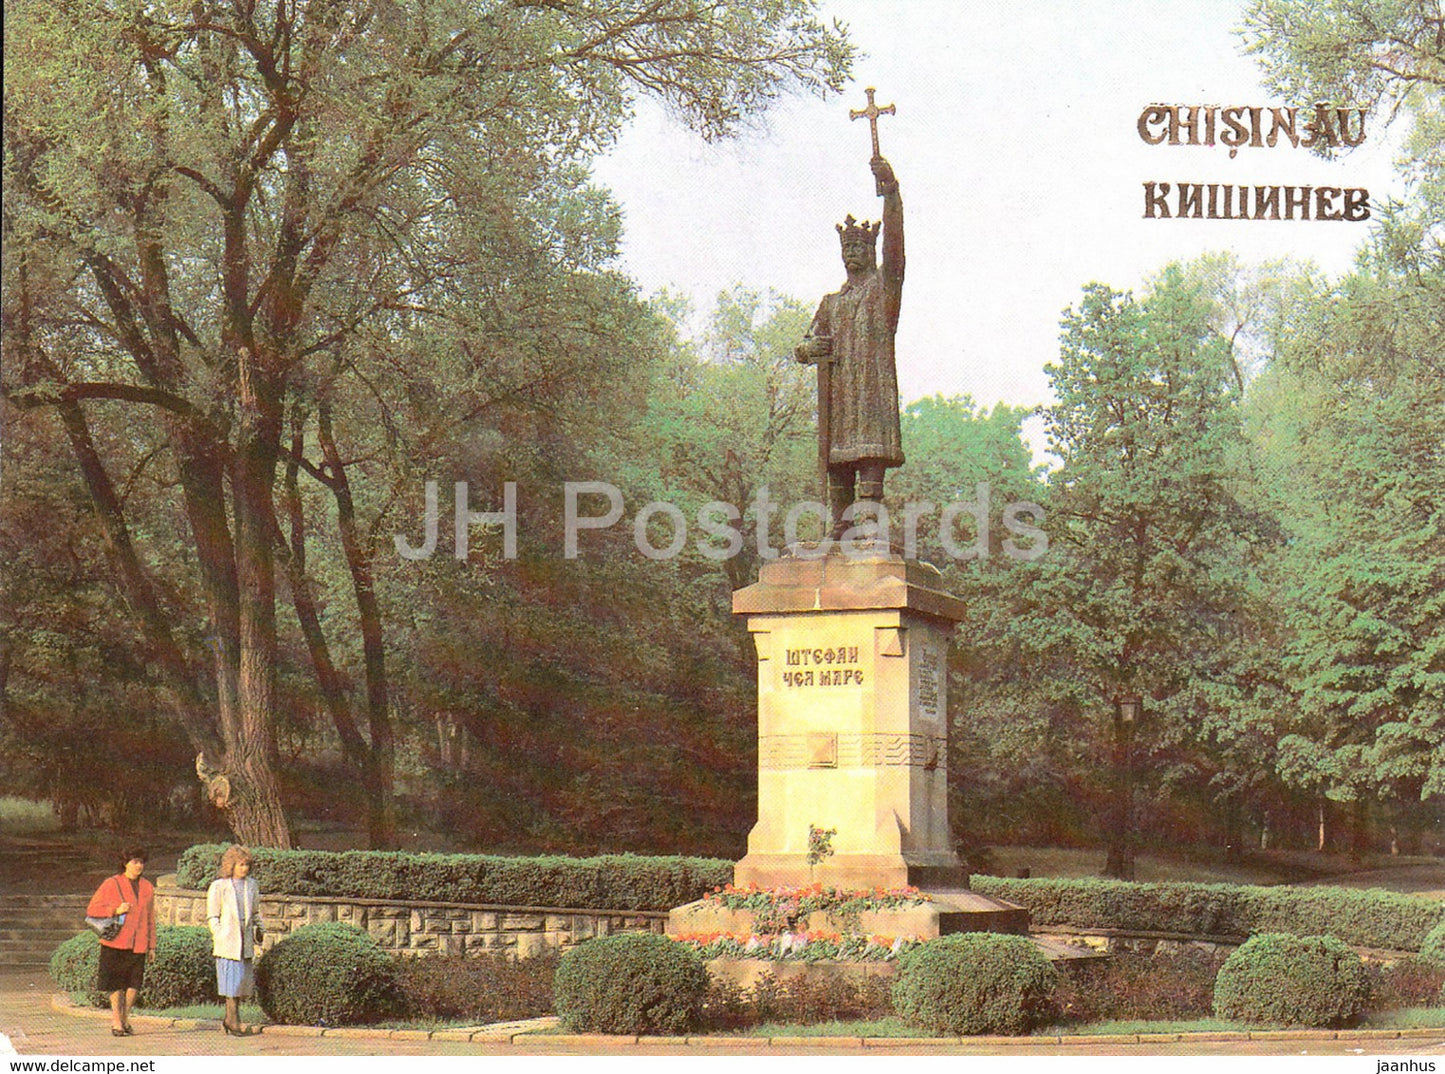 Chisinau - Kishinev - monument to Stephen The Great - 1989 - Moldova USSR - unused - JH Postcards